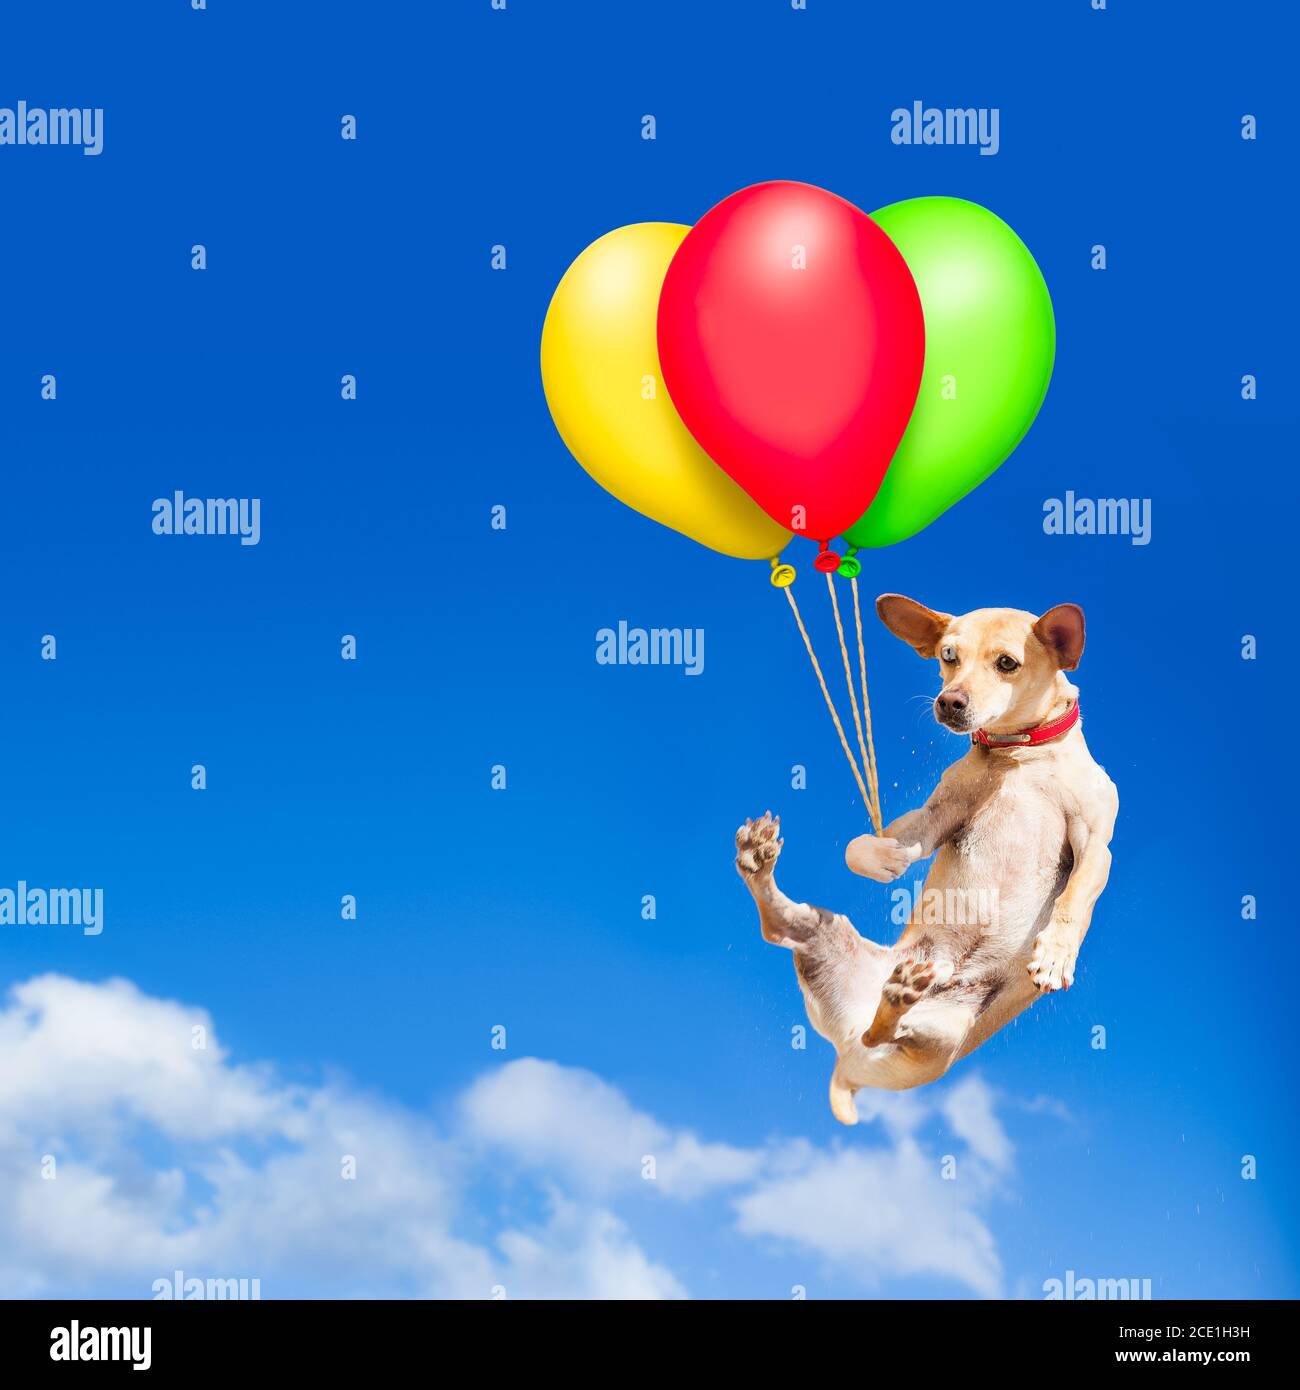 Hund hängt an Ballon in der Luft Stockfotografie - Alamy